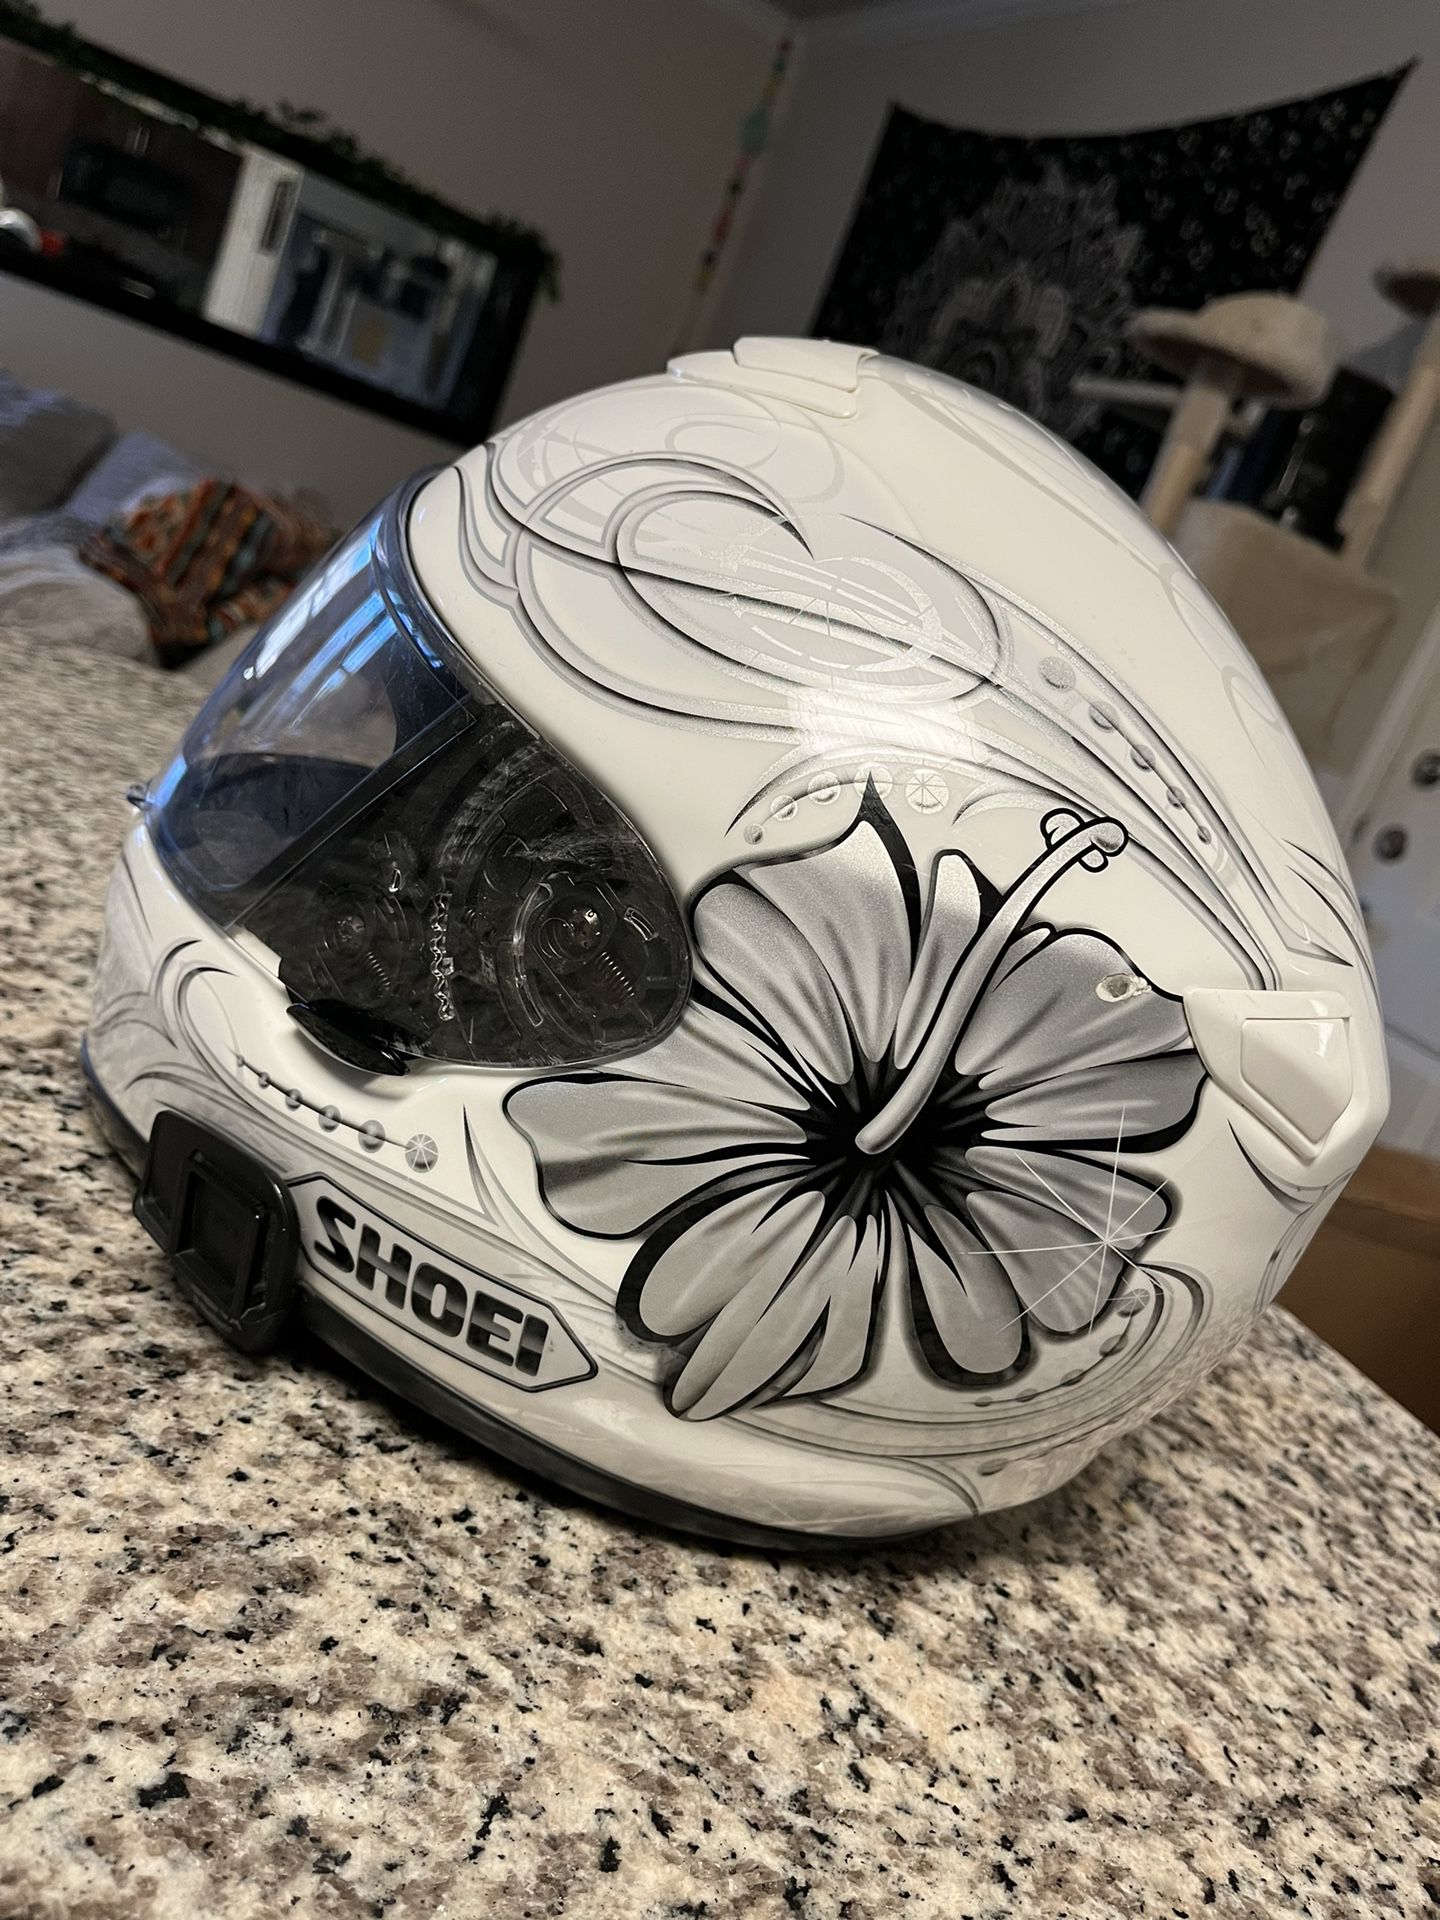 Used Women’s Small Shoei Helmet